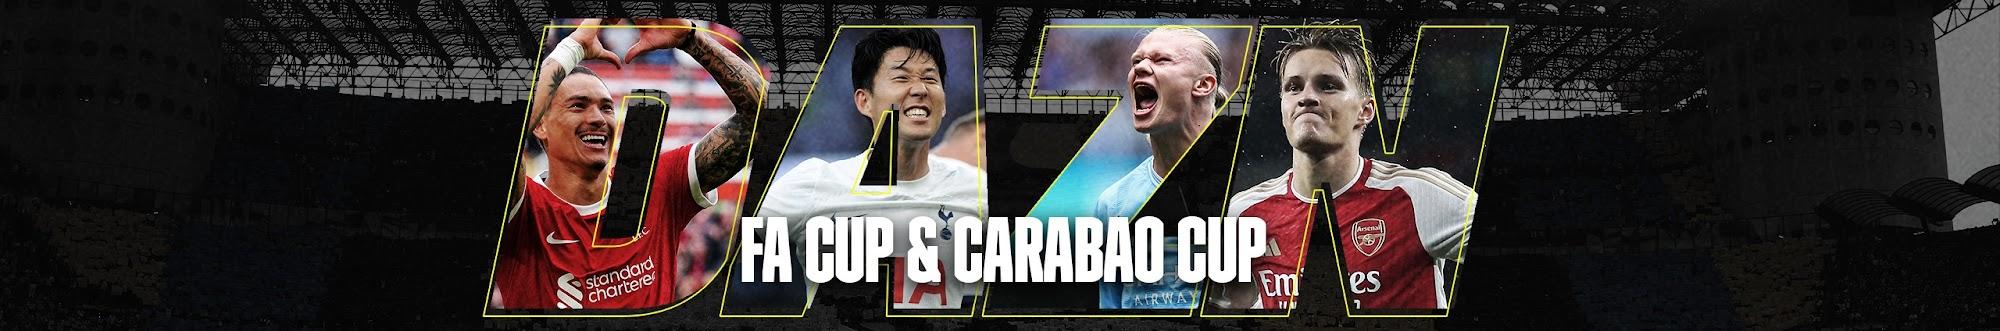 DAZN FA Cup & Carabao Cup